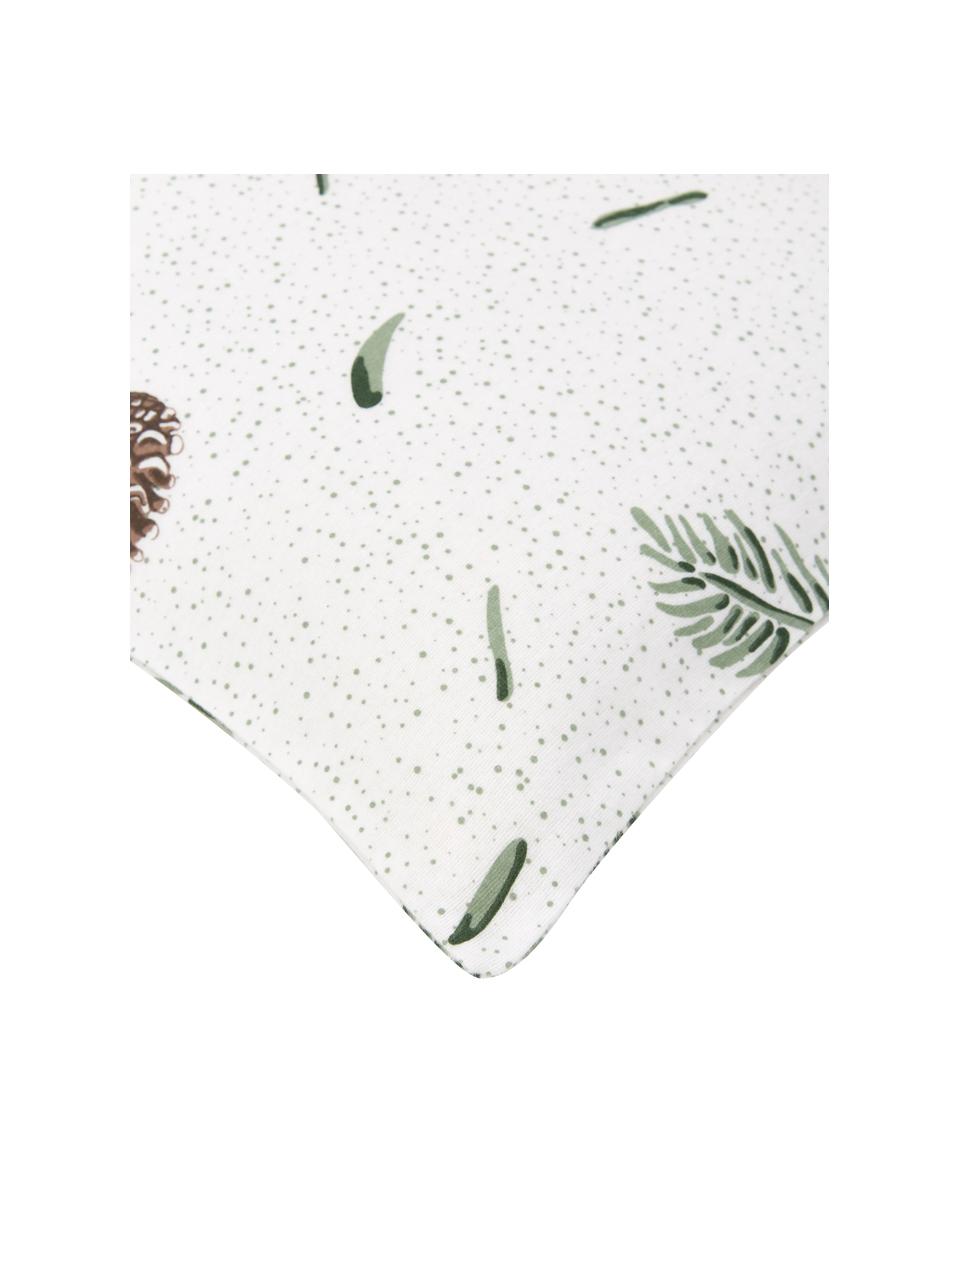 Flanellen kussenhoezen Pinecone, 2 stuks, Wit, groen, B 40 x L 80 cm